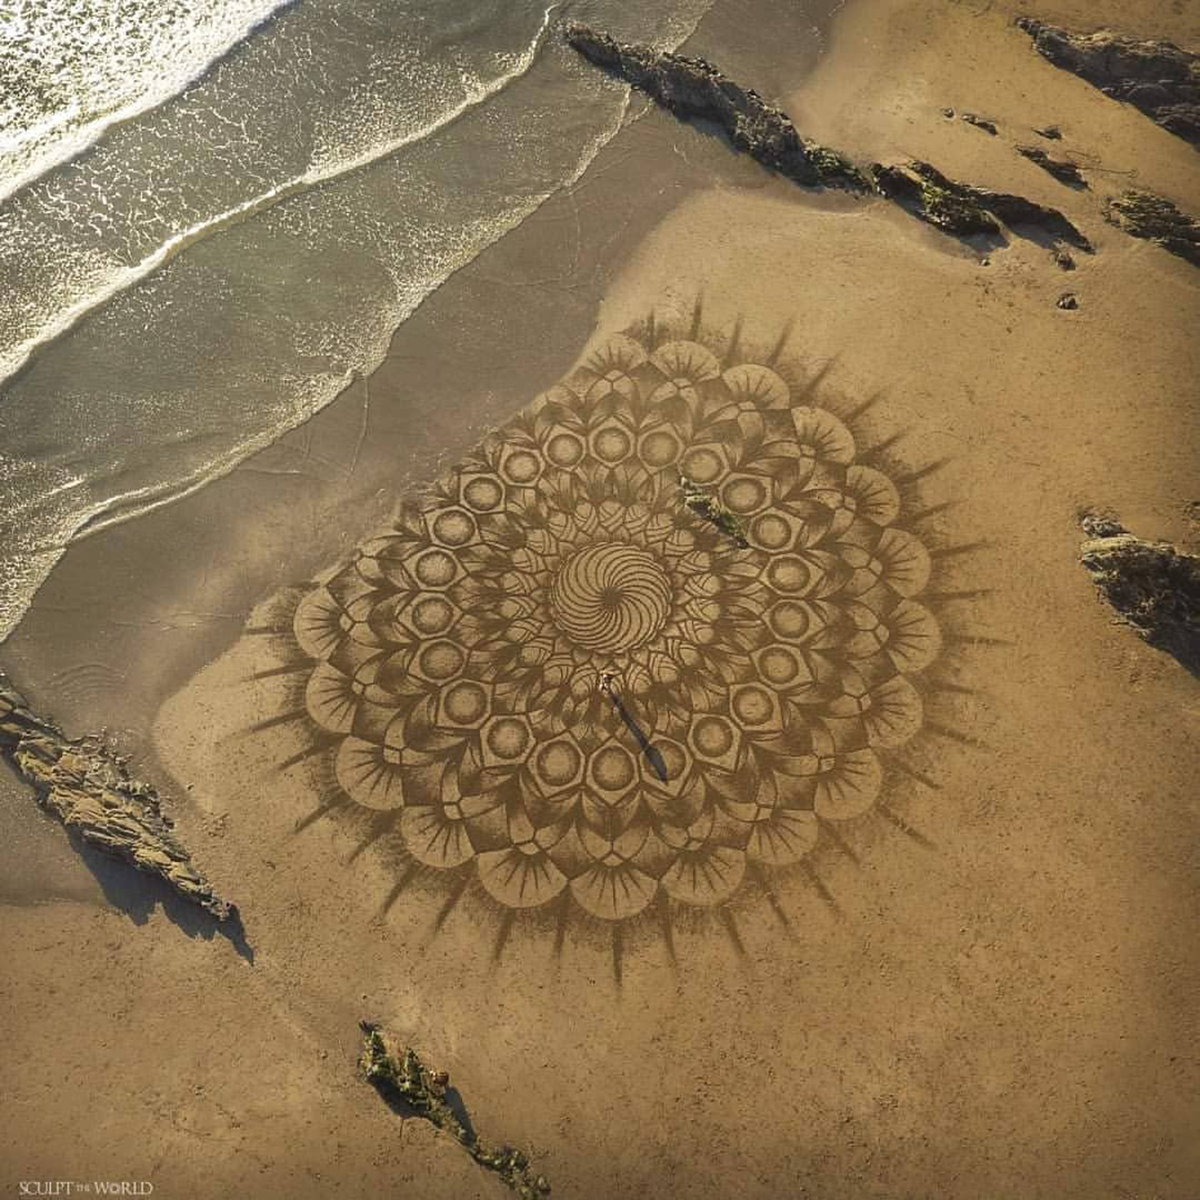 Les incroyables œuvres géométriques dans le sable de Jon Foreman